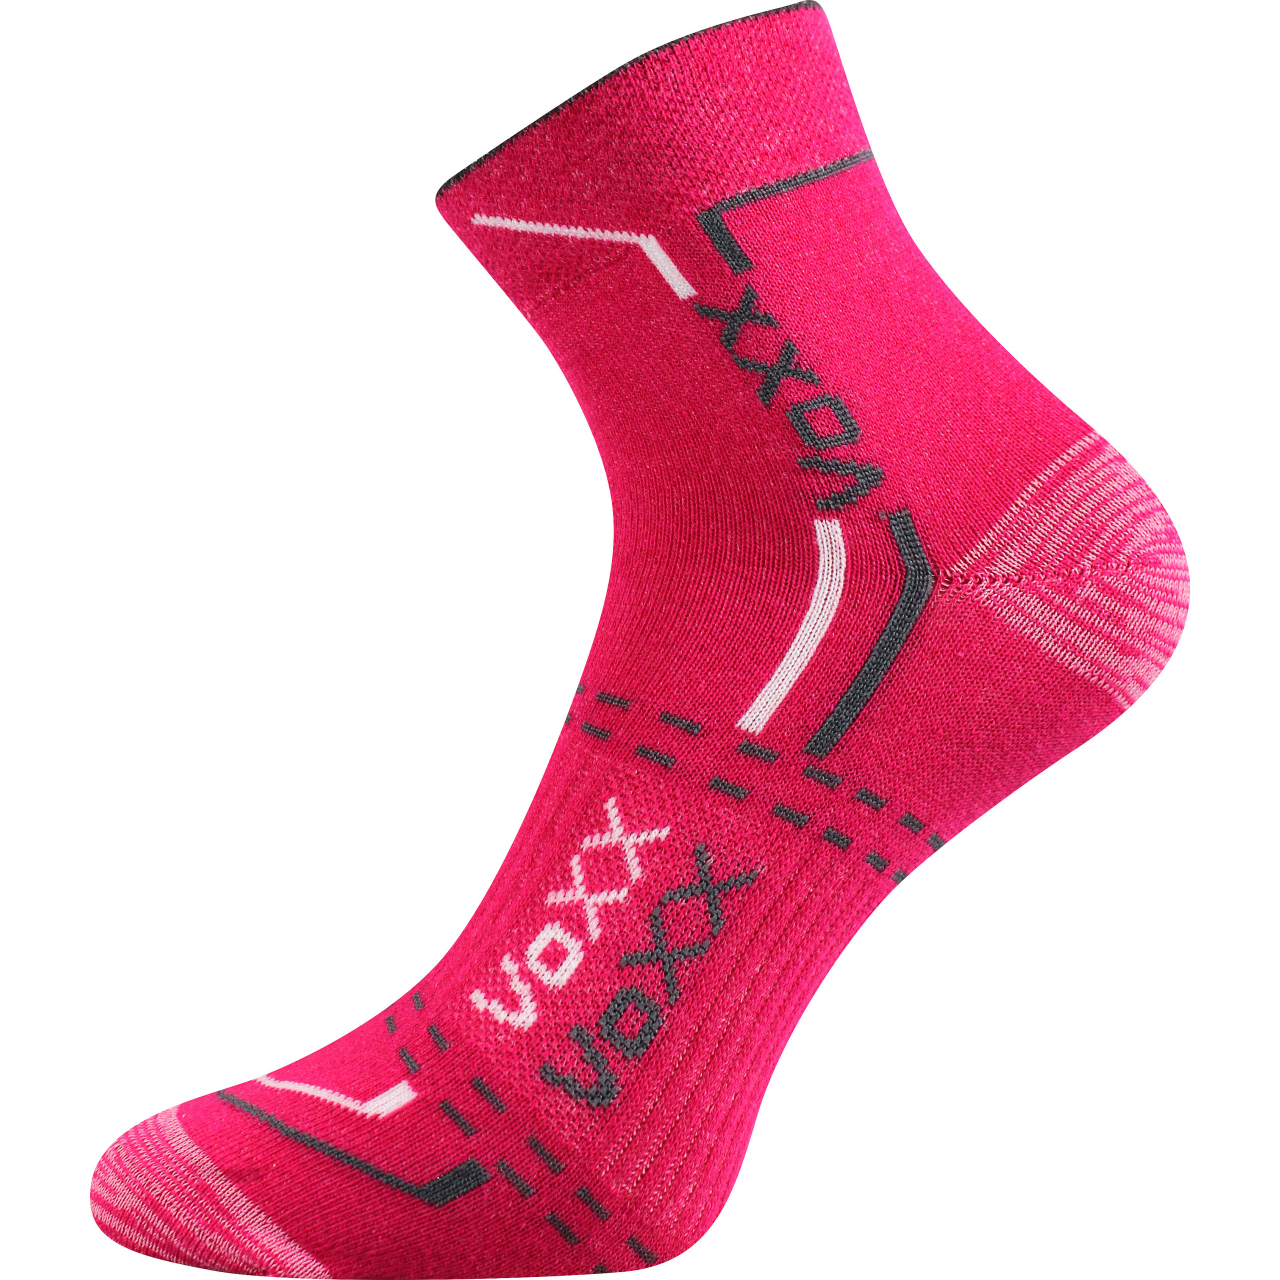 Ponožky unisex sportovní Voxx Franz 03 - tmavě růžové, 35-38